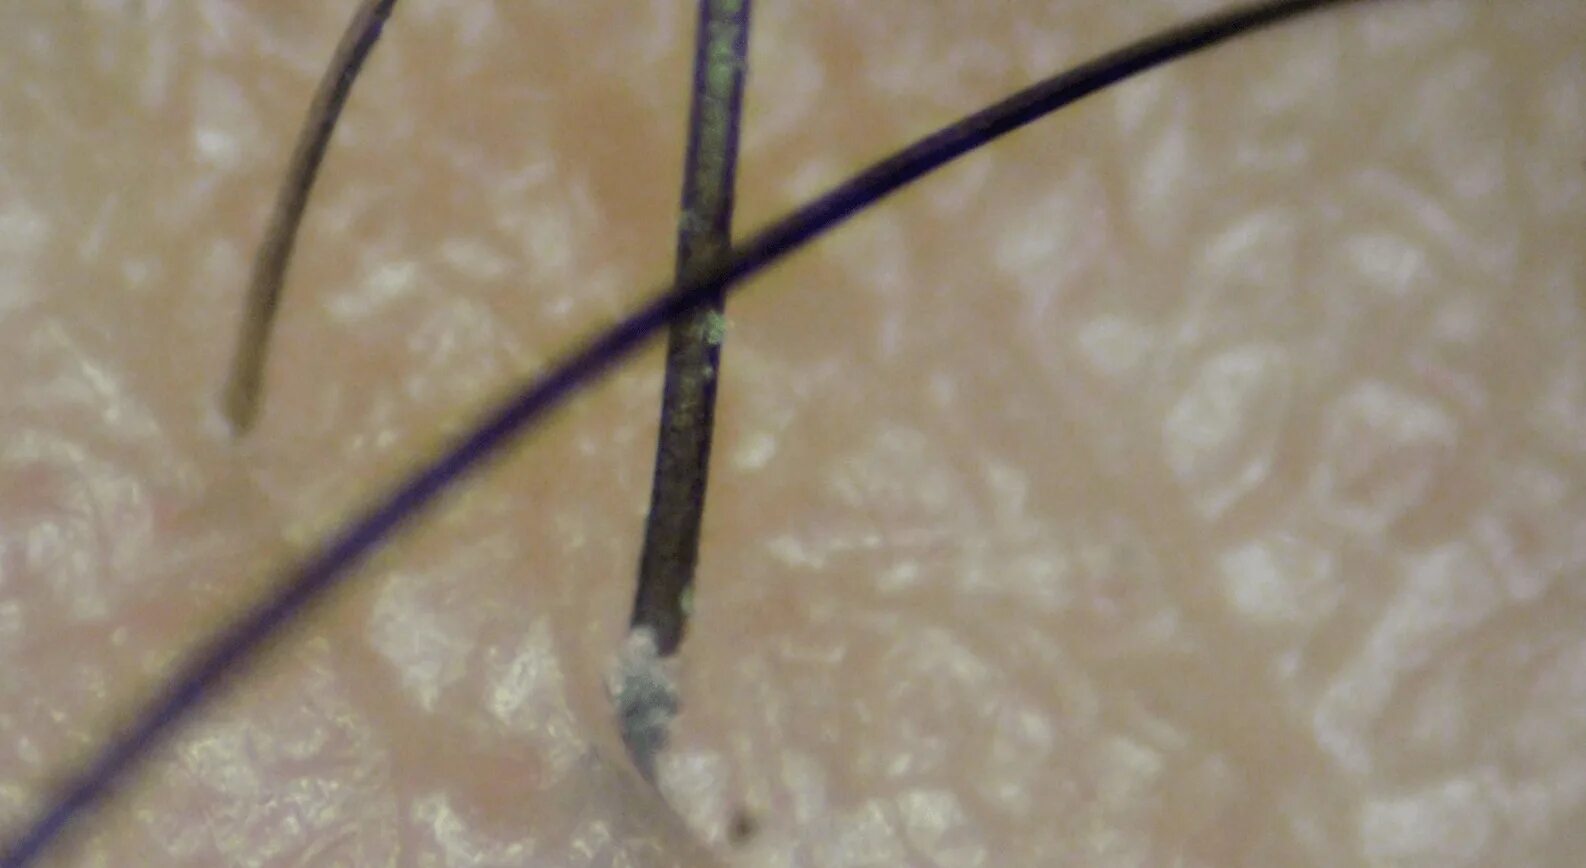 Волосяная луковица микроскопом. Луковица волоса под микроскопом. Кожа головы под микроскопом. Волосяная луковица под микроскопом.